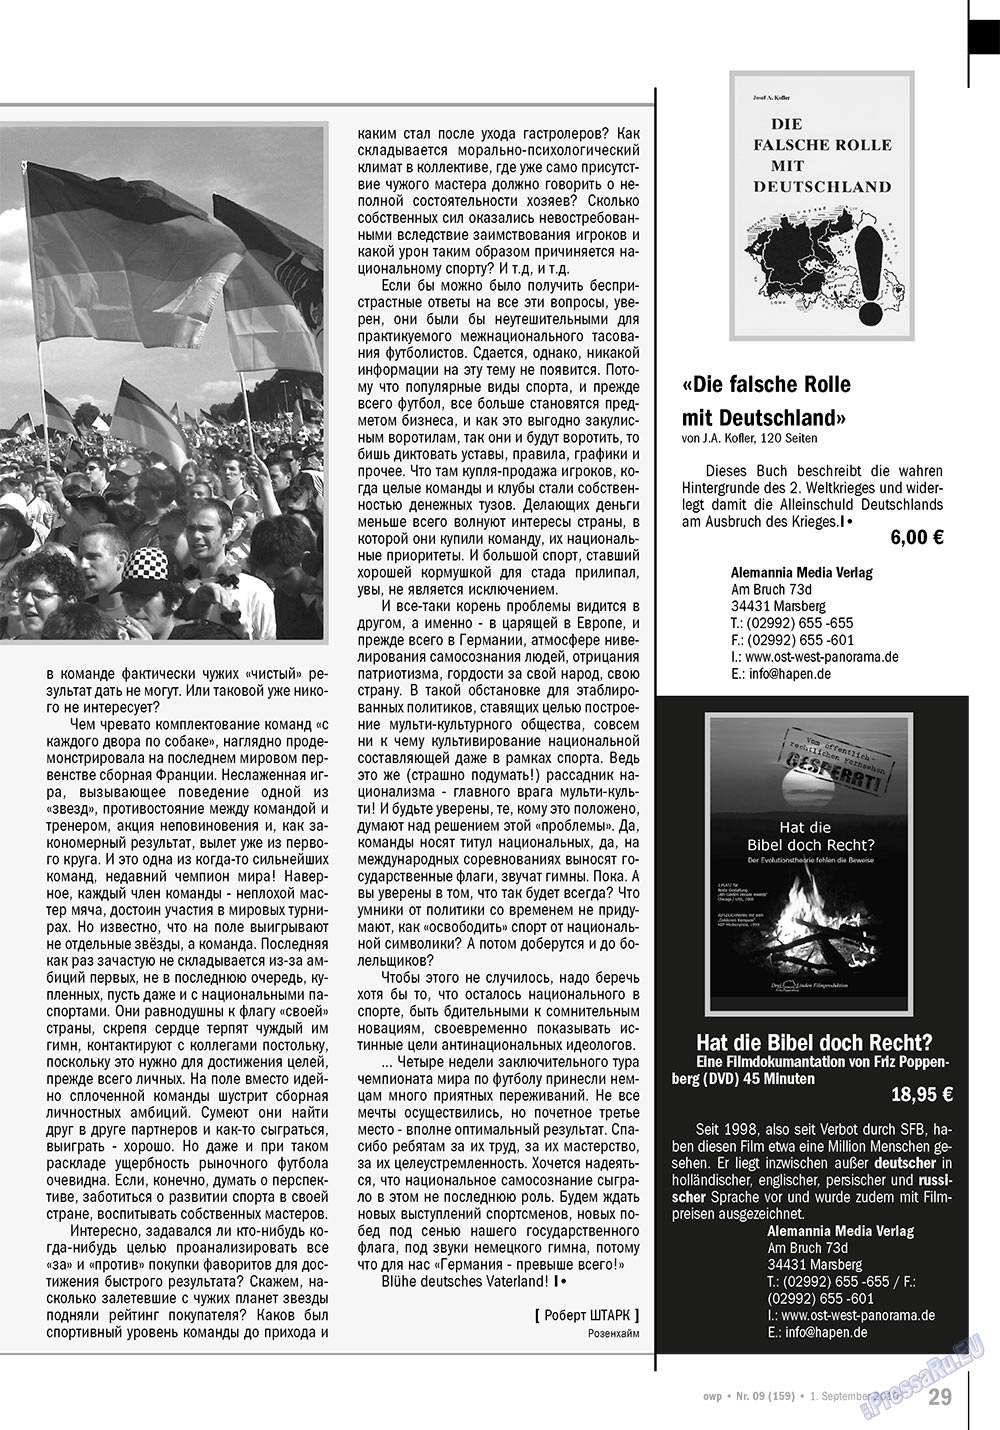 Ost-West Panorama (журнал). 2010 год, номер 9, стр. 29